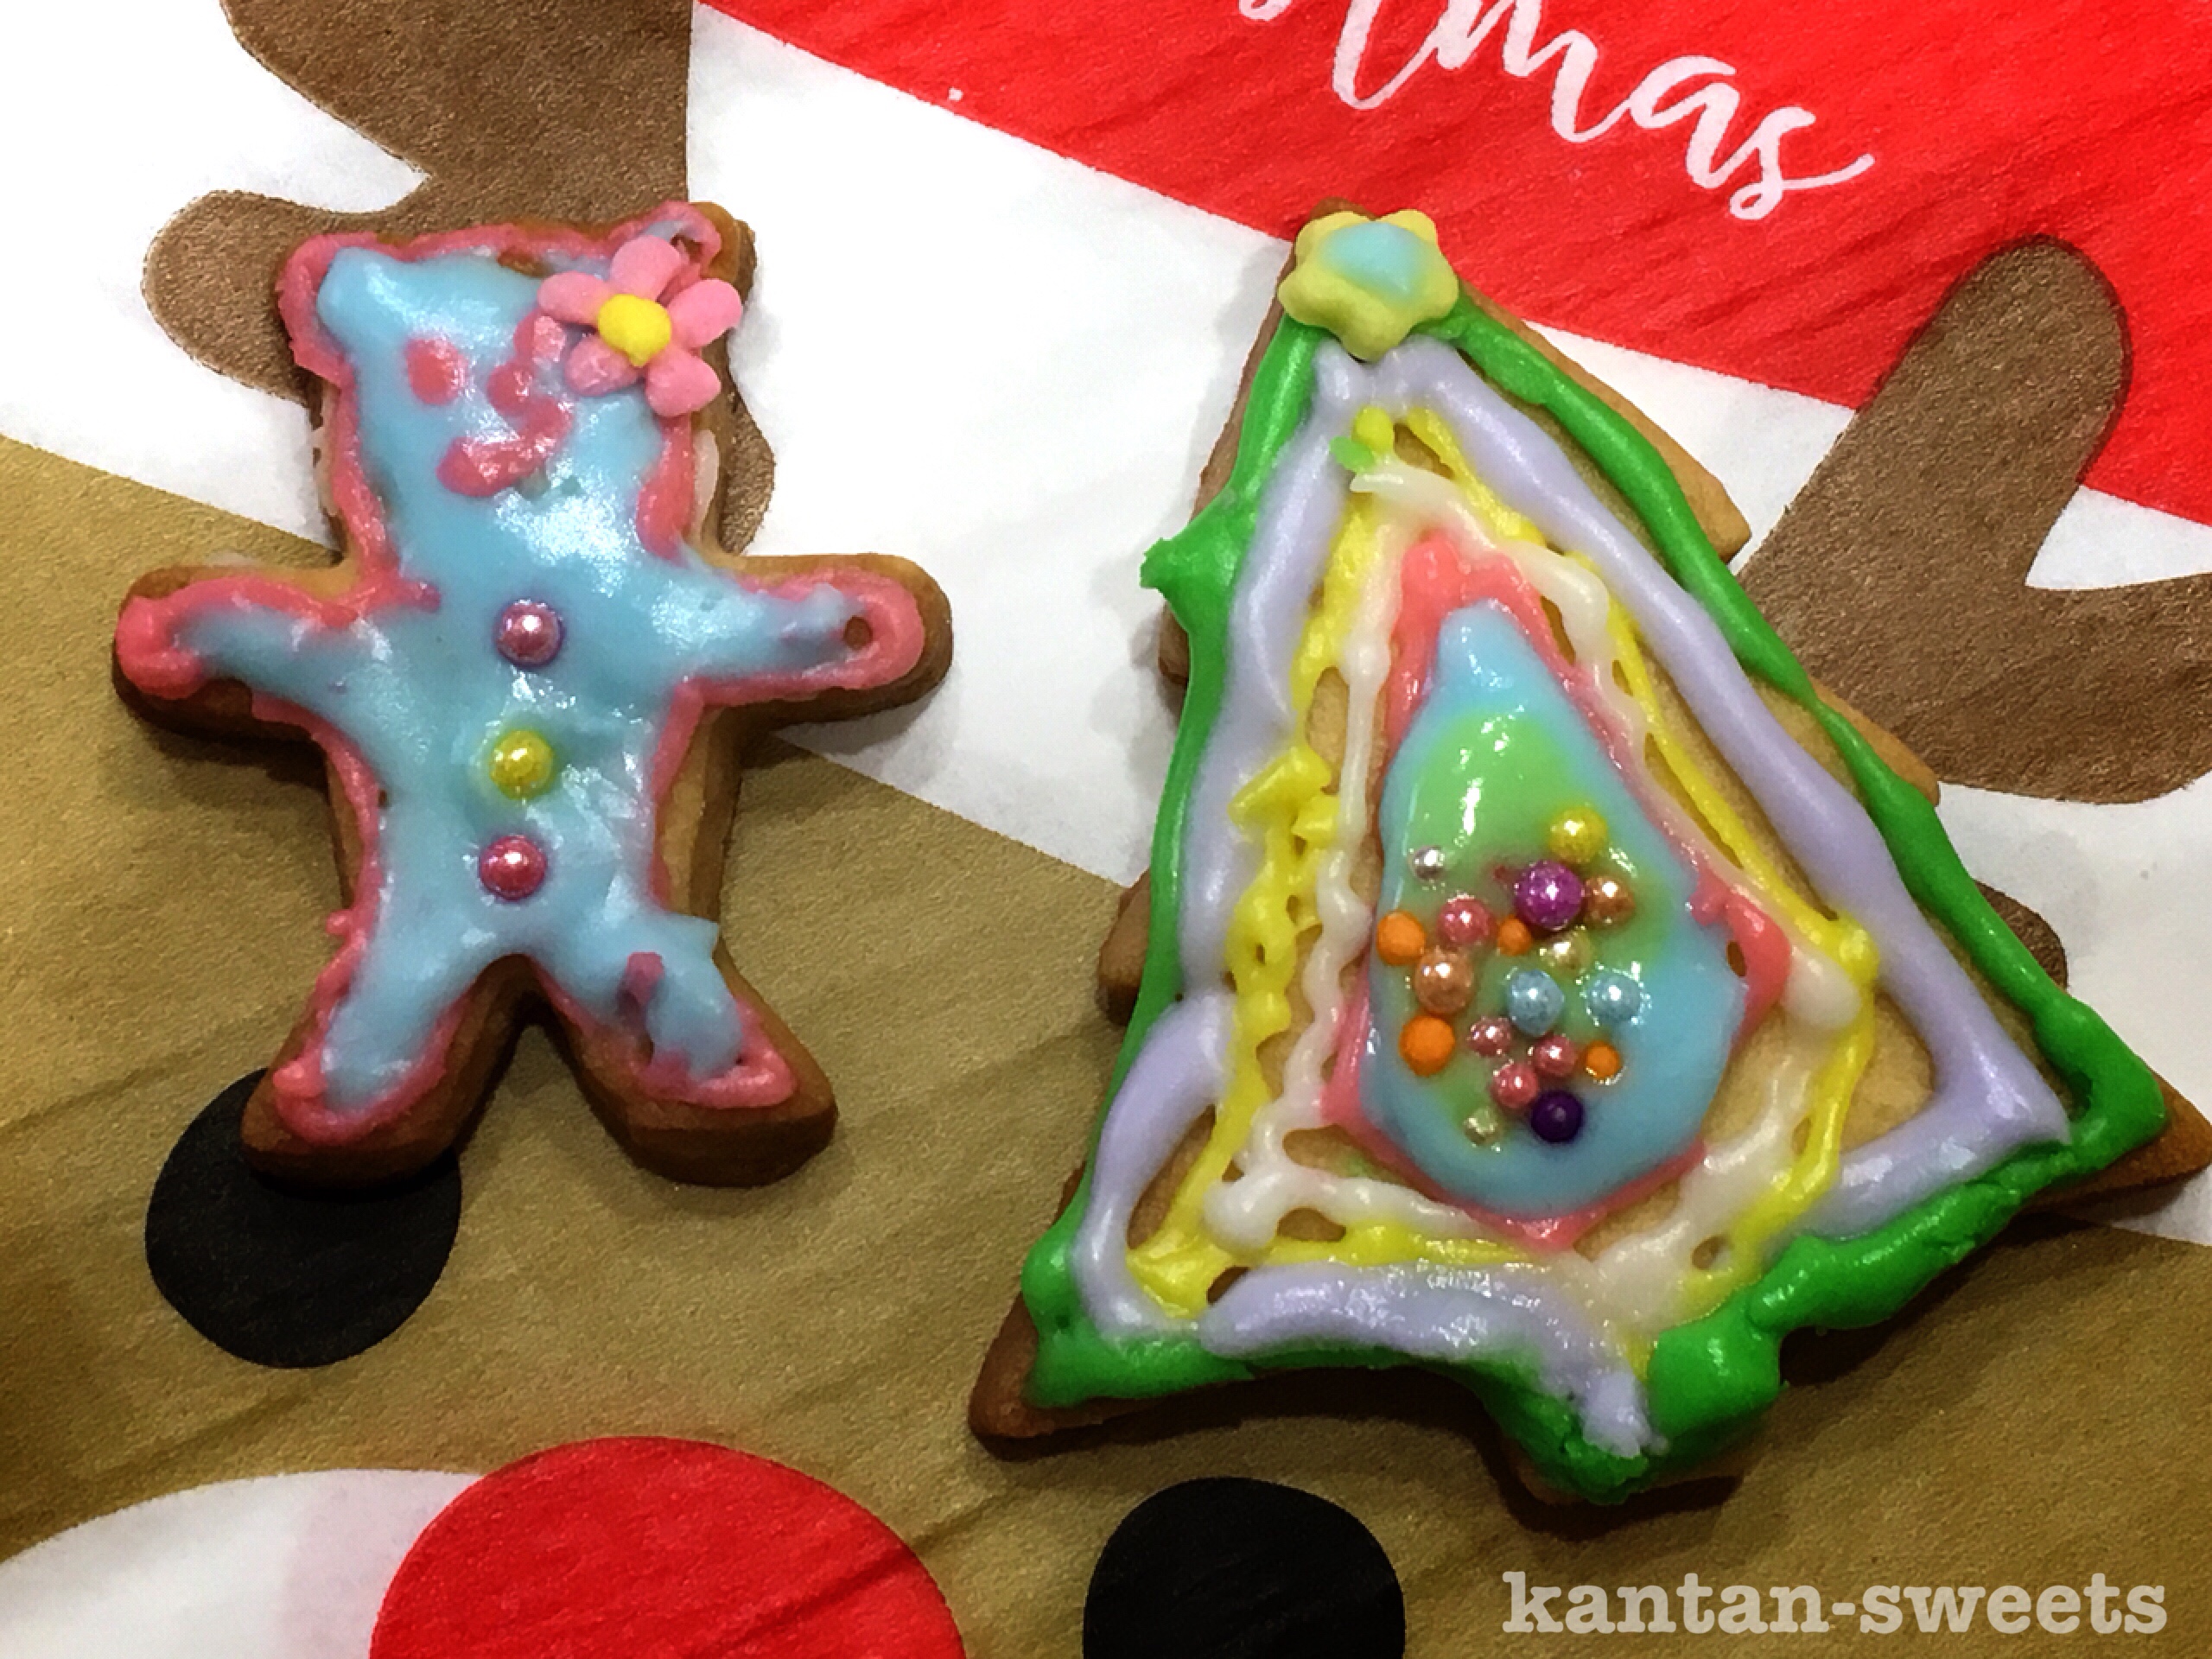 【満員御礼】親子でクリスマスのアイシングクッキーを楽しく作ろう♪